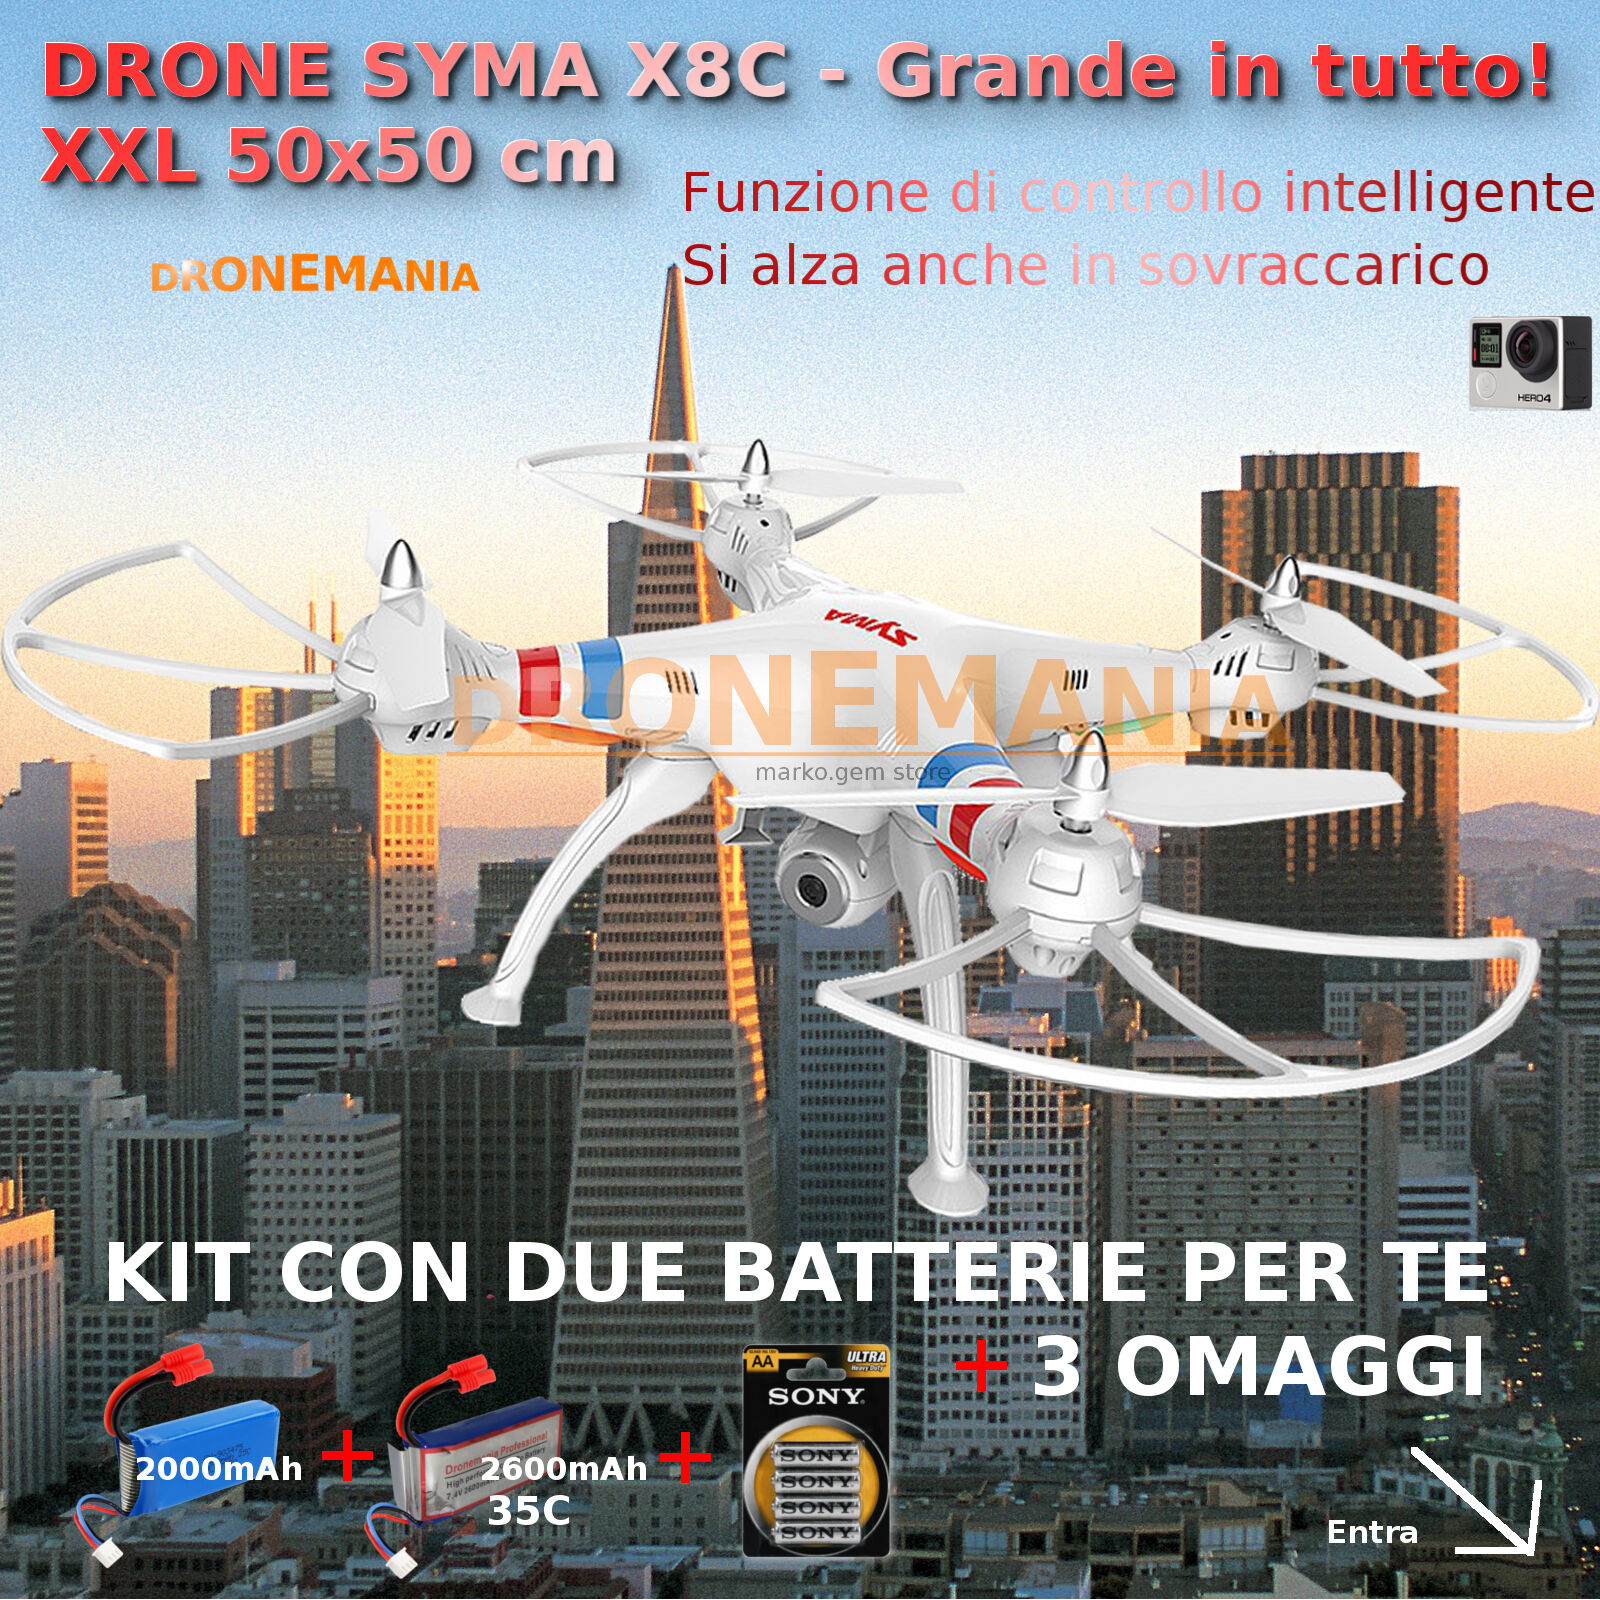 DRONE SYMA X8C XXL GRANDE radiocomandato HEADLESS CAMERA  VIDEO GOPRO omaggio!